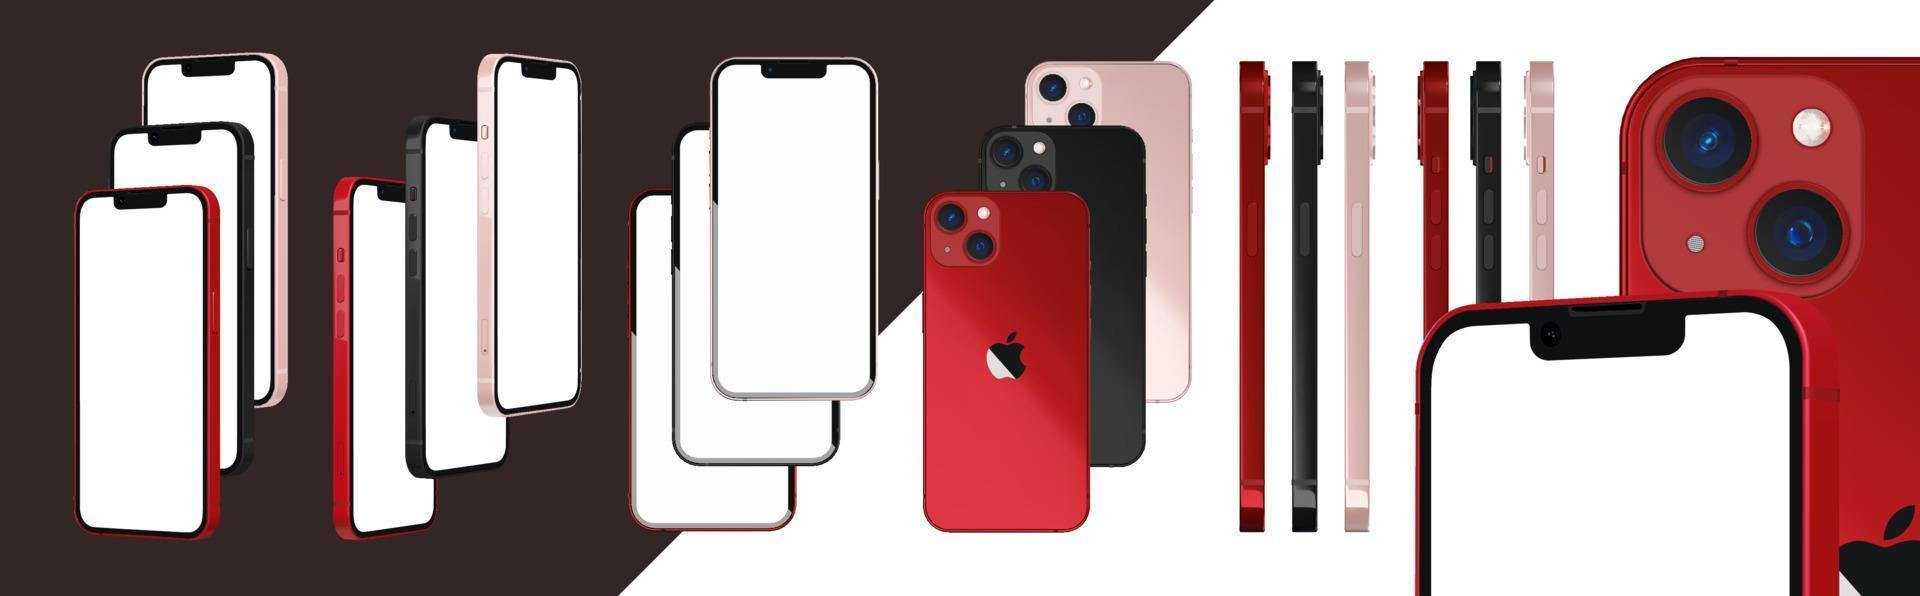 iphone 13 nero, rosa e prodotto rosso colore 3d realistico vettore mockup set